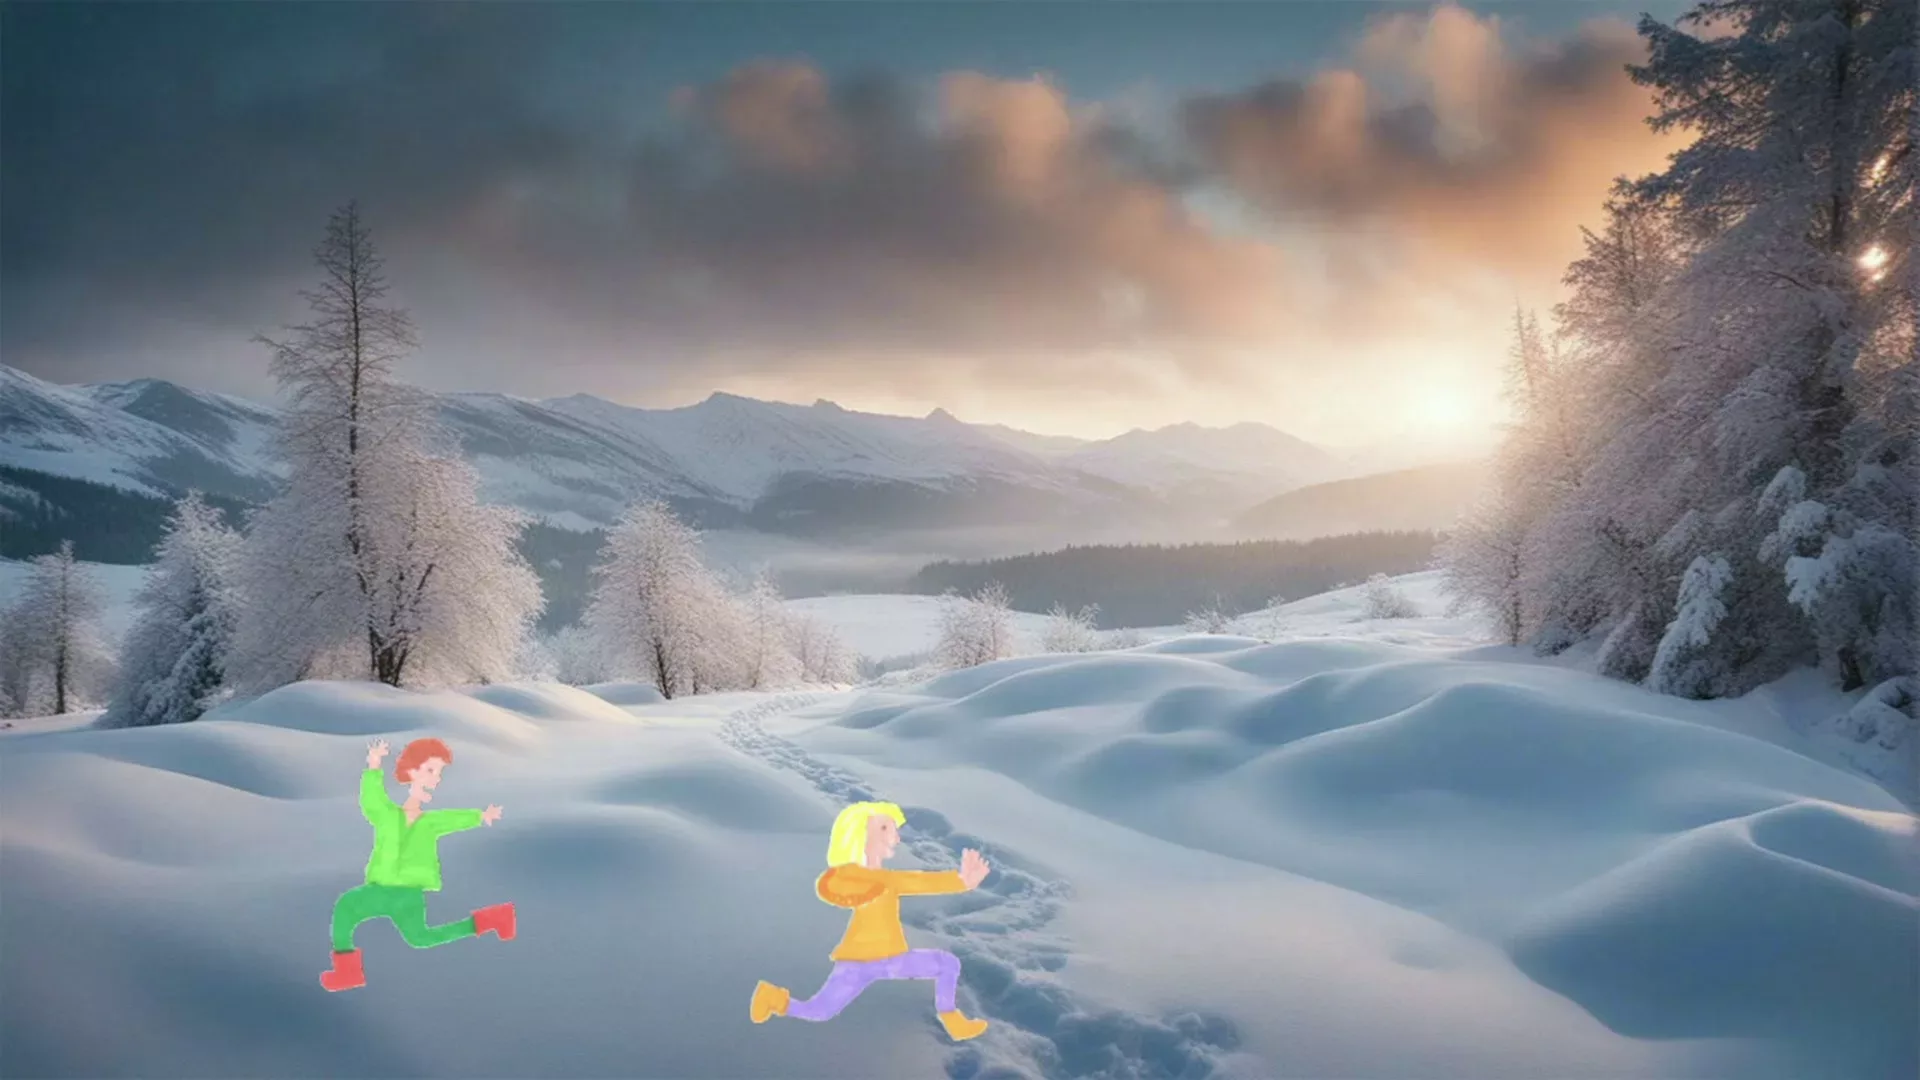 Deux enfants courent l'un après l'autre parmi les bosses de neige, lors d'un coucher de soleil en pleine montagne.